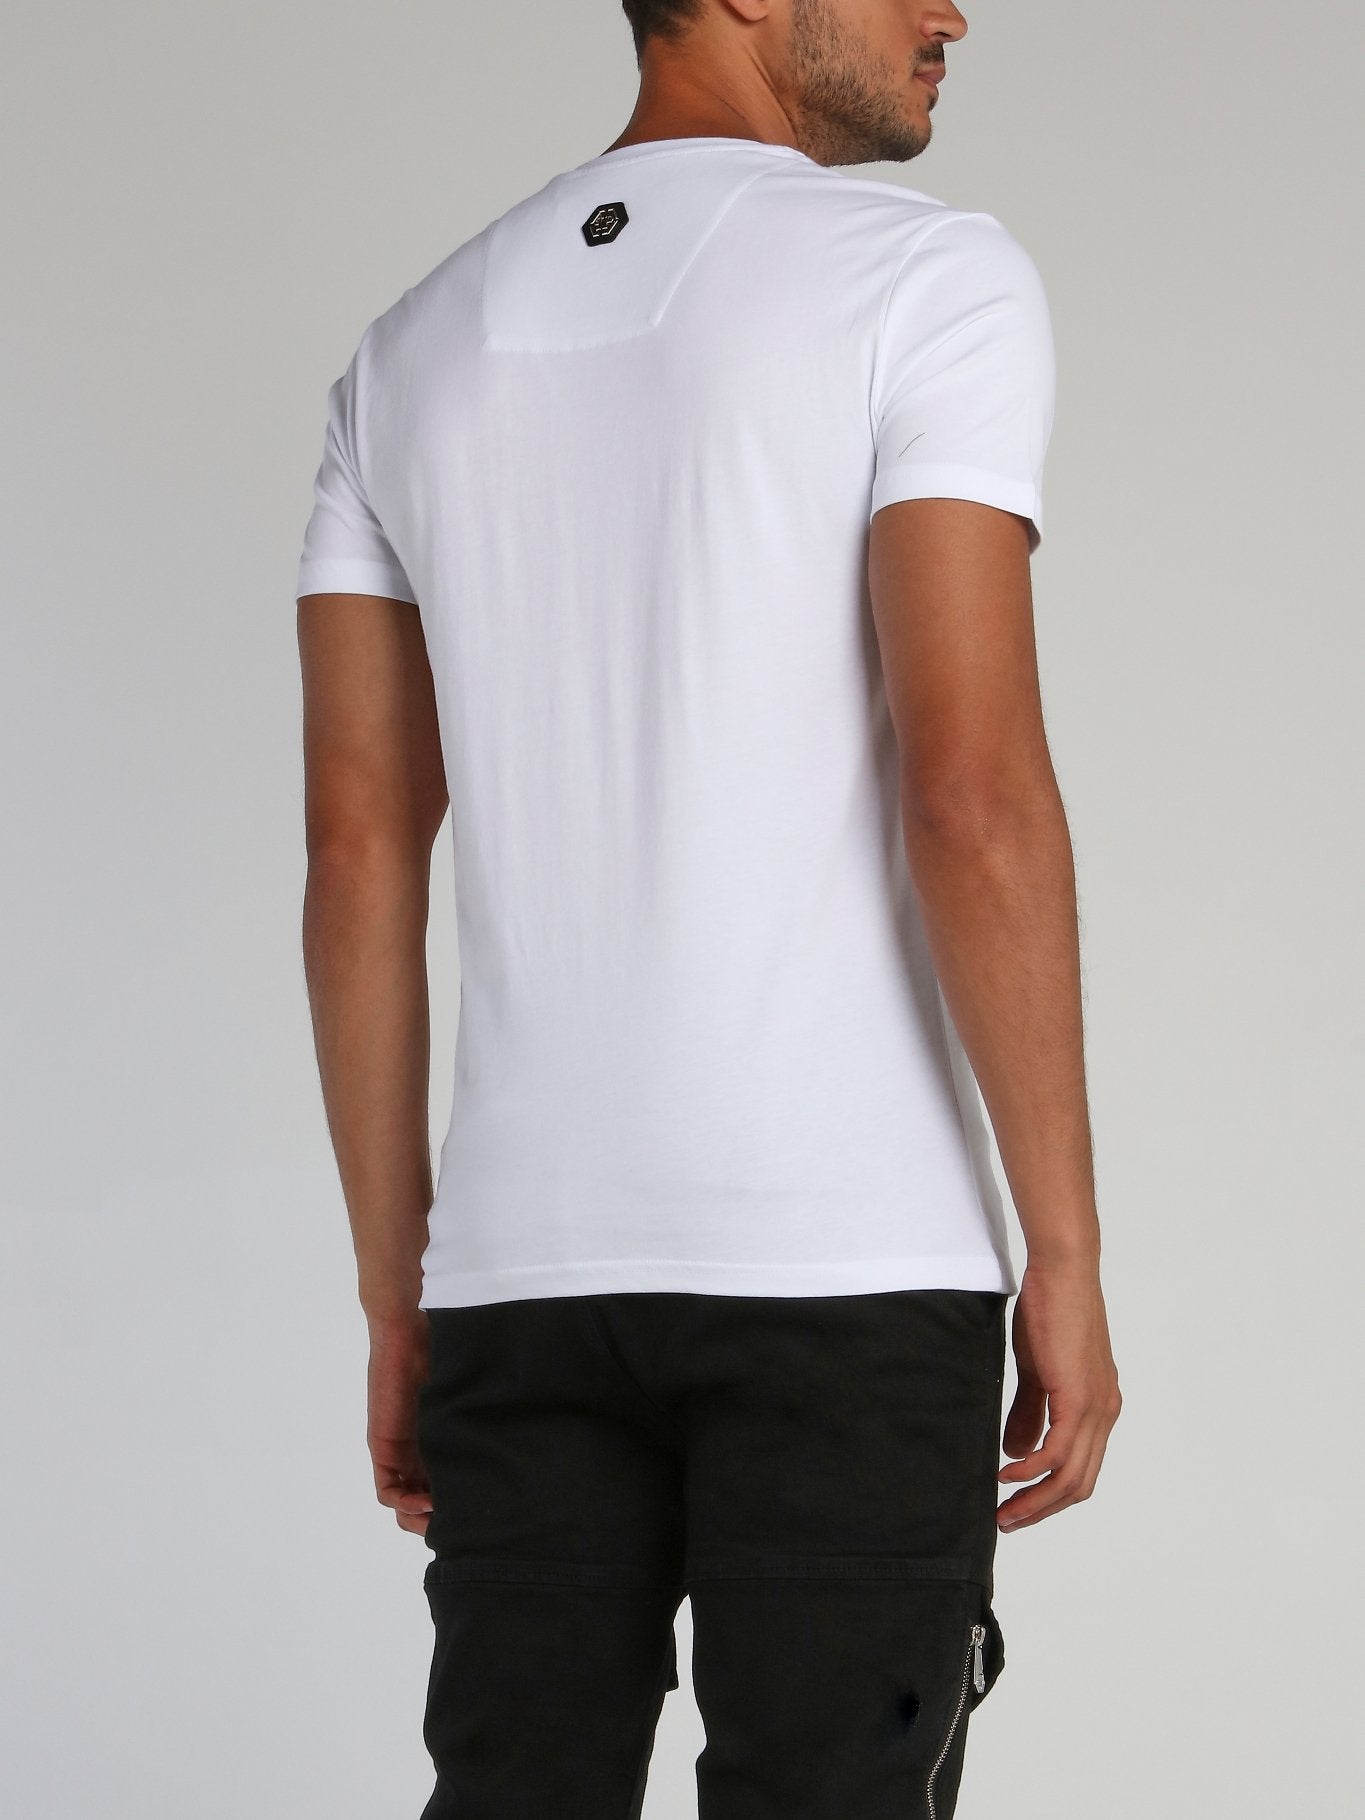 PP1978 White Studded Logo T-Shirt